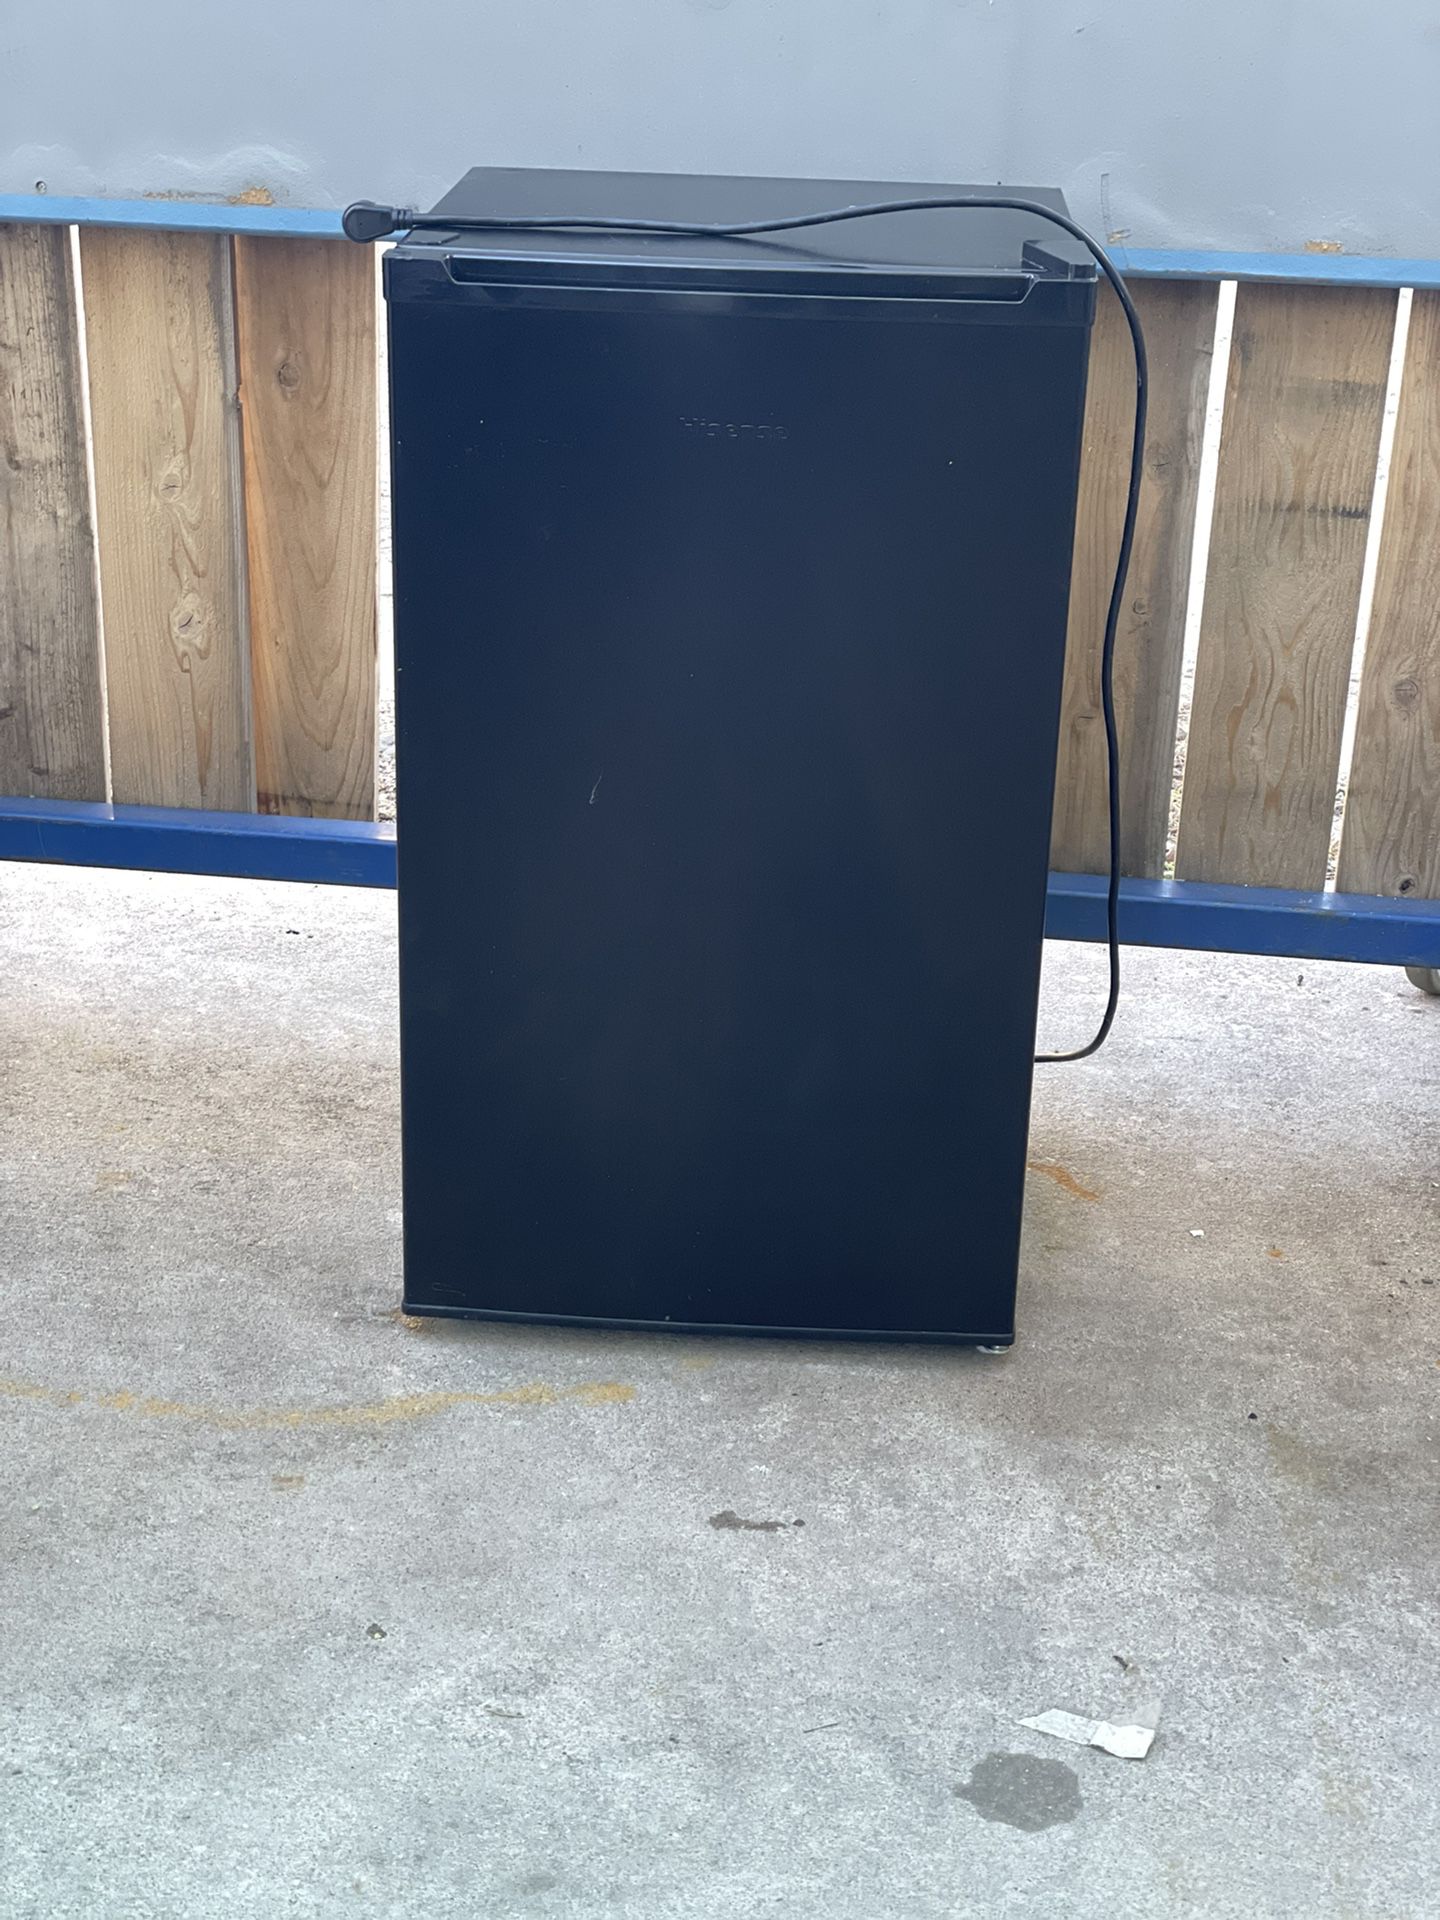 Hisense Mini Refrigerator, 3.2 Cu Ft Fridge, Black 